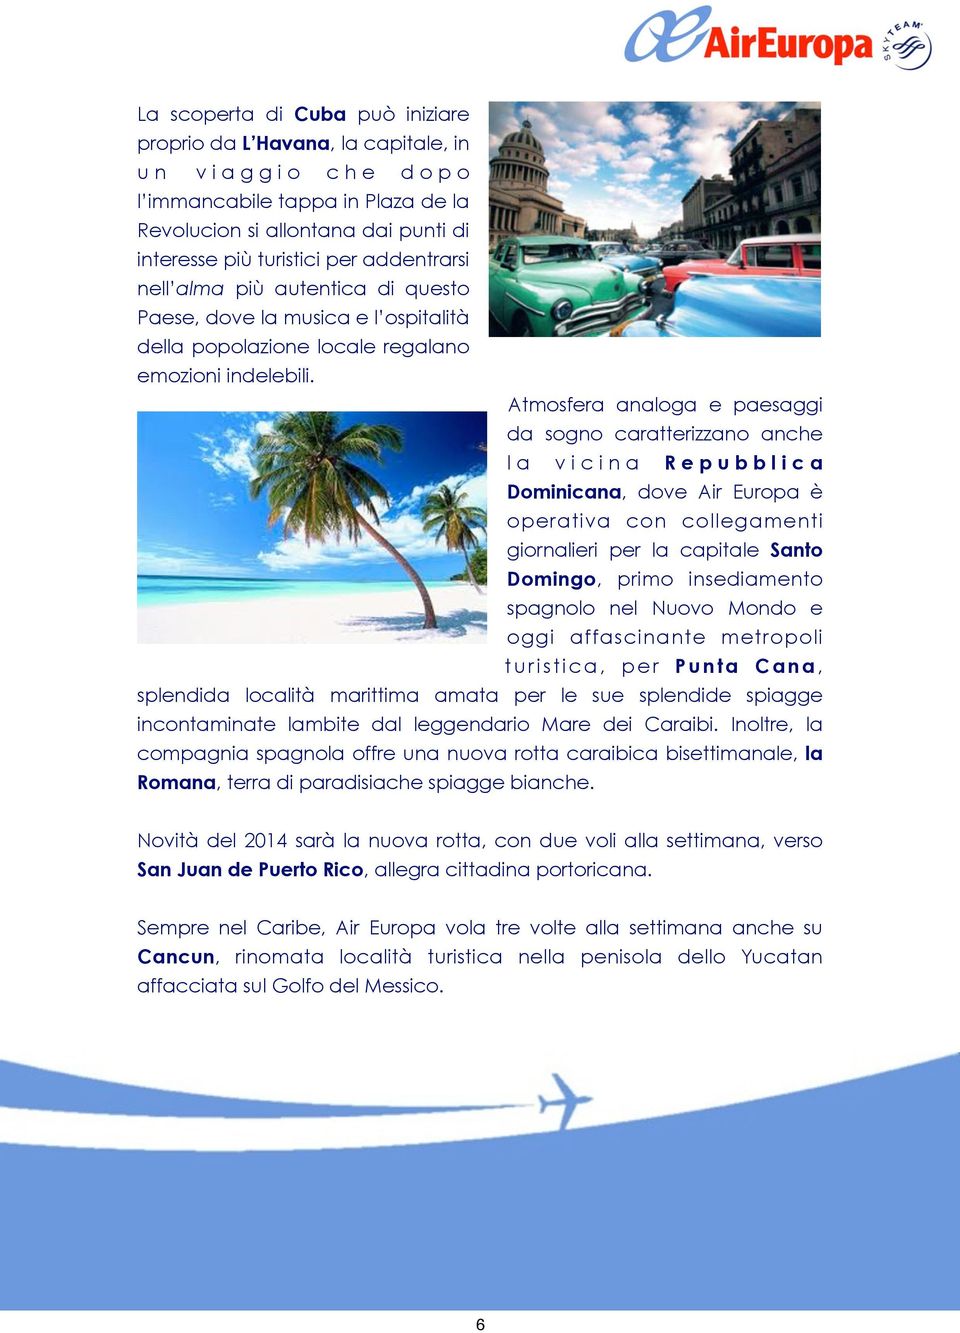 Atmosfera analoga e paesaggi da sogno caratterizzano anche la vicina Repubblica Dominicana, dove Air Europa è operativa con collegamenti giornalieri per la capitale Santo Domingo, primo insediamento